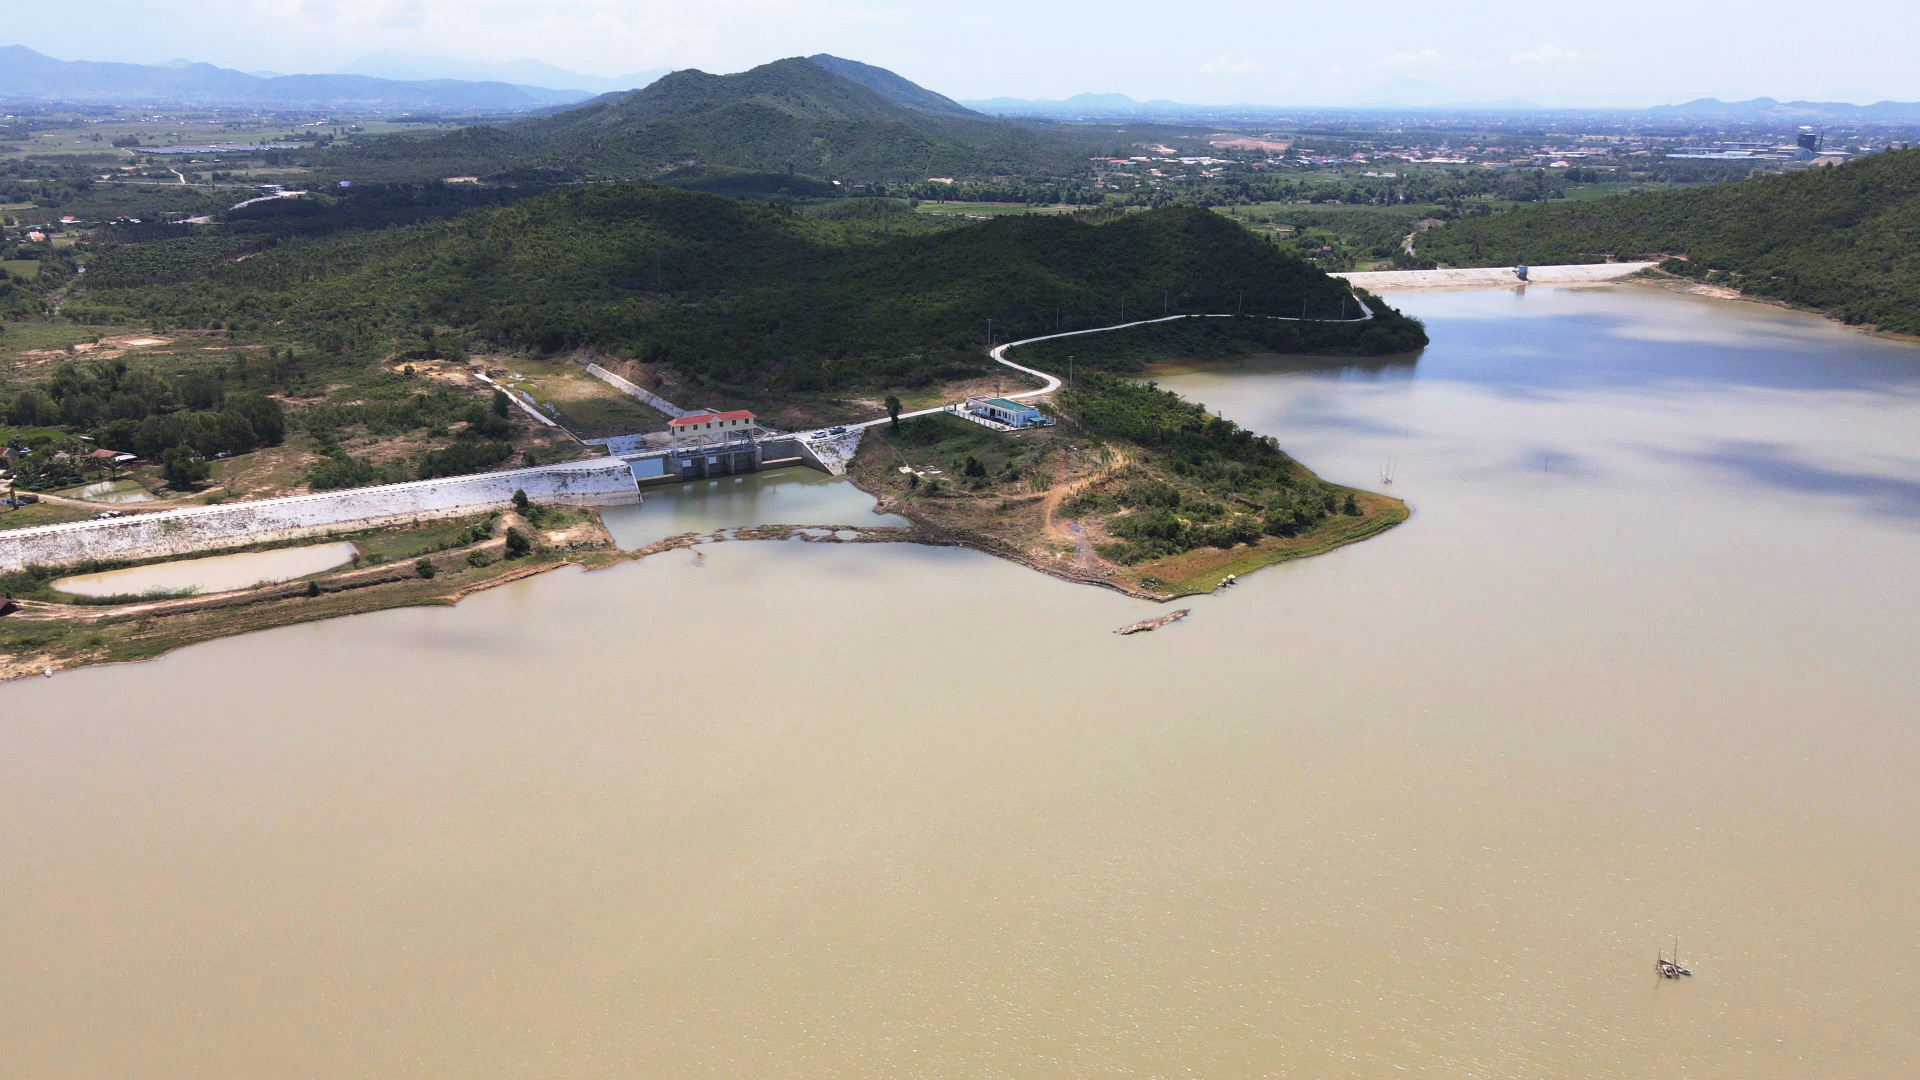 Hồ Suối Trầu hiện mực nước không đảm nước tưới cho sản xuất nông nghiệp tại các vùng ở xa hồ. Ảnh: KS.